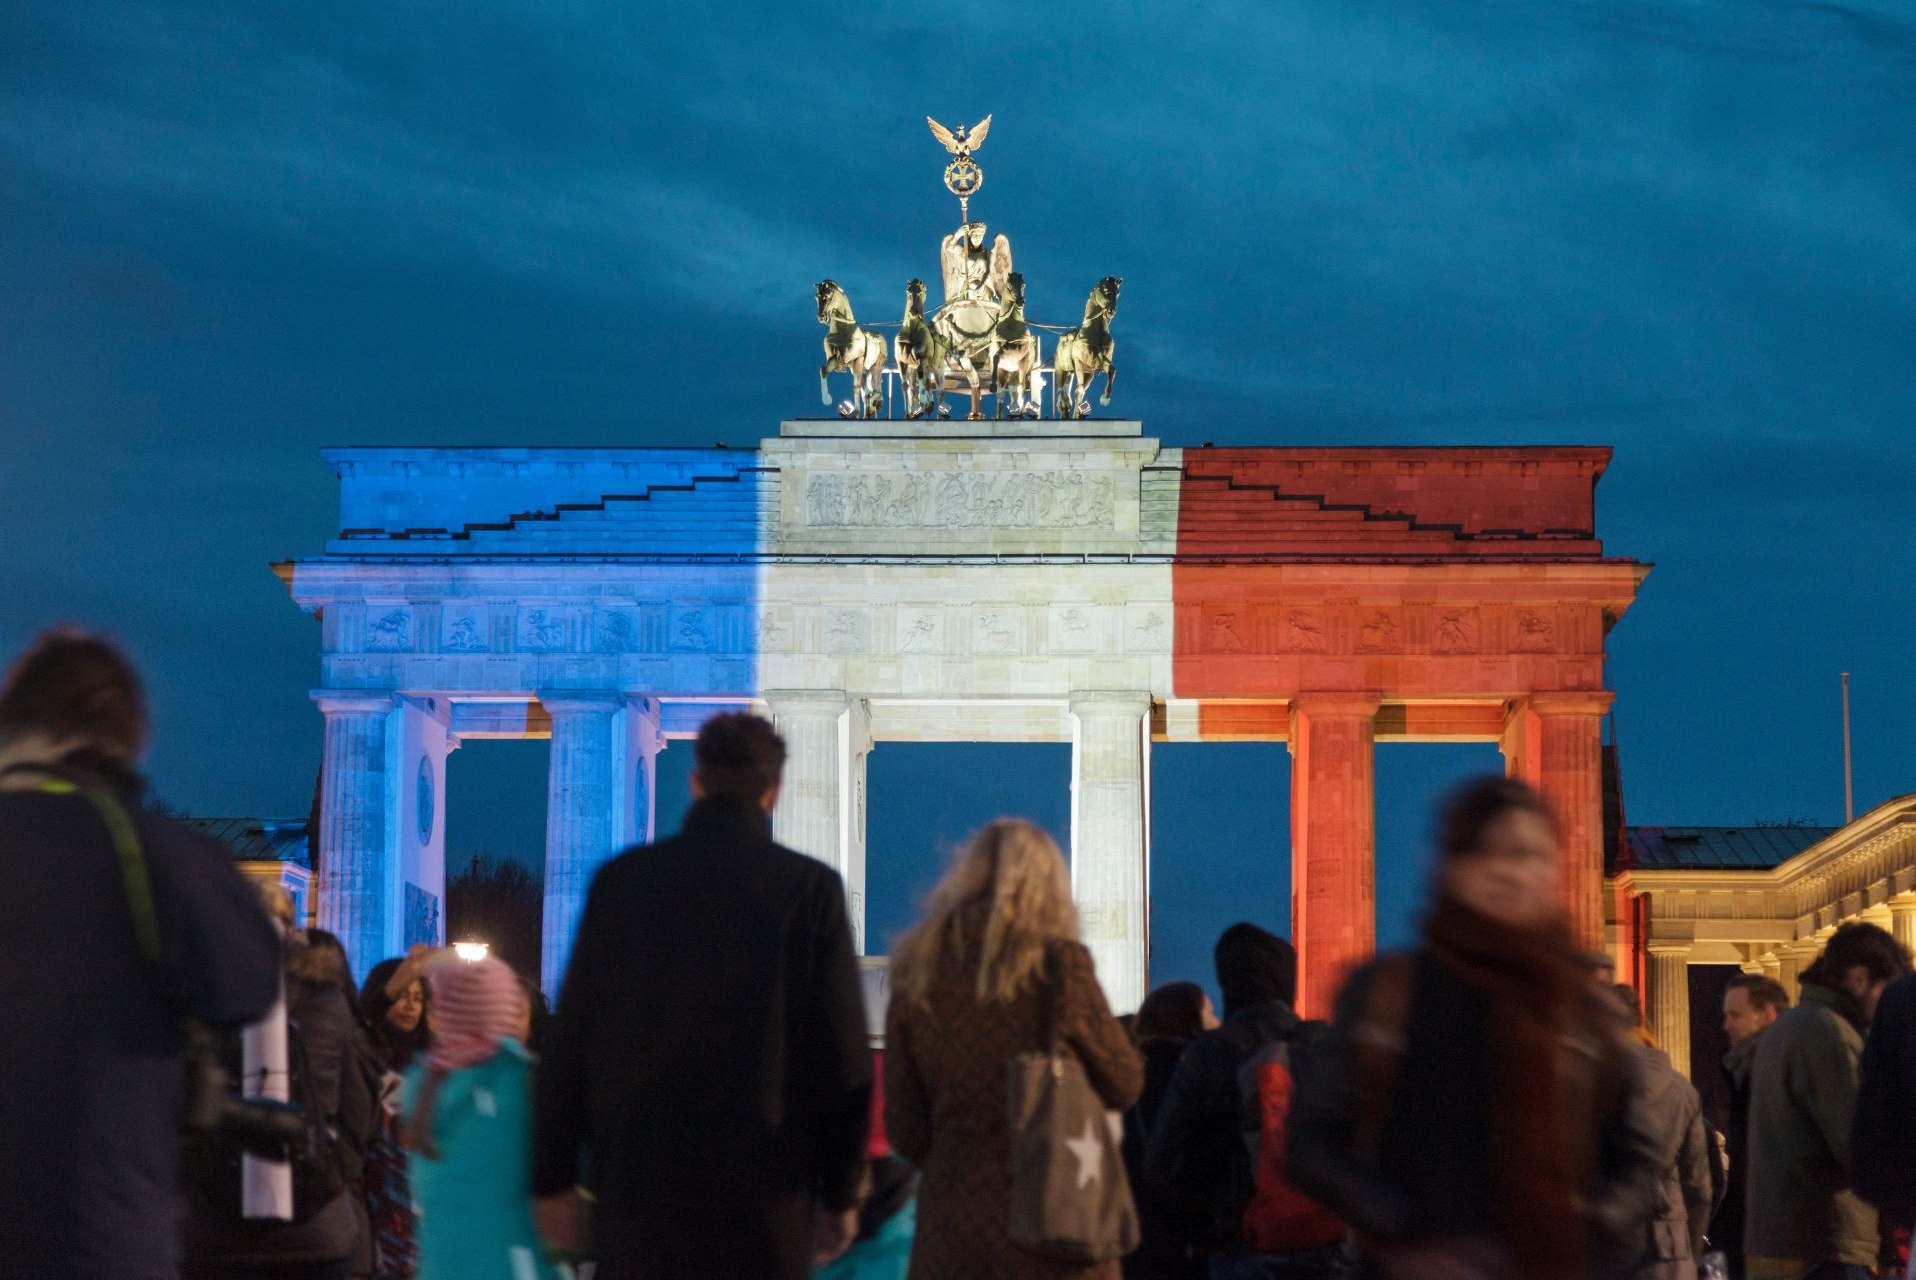 Fotografie von Pierre Adenis. Brandenburger Tor mit Tricolore-Beleuchtung. Rückblende 2015. Der deutsche Preis für politische Fotografie und Karikatur